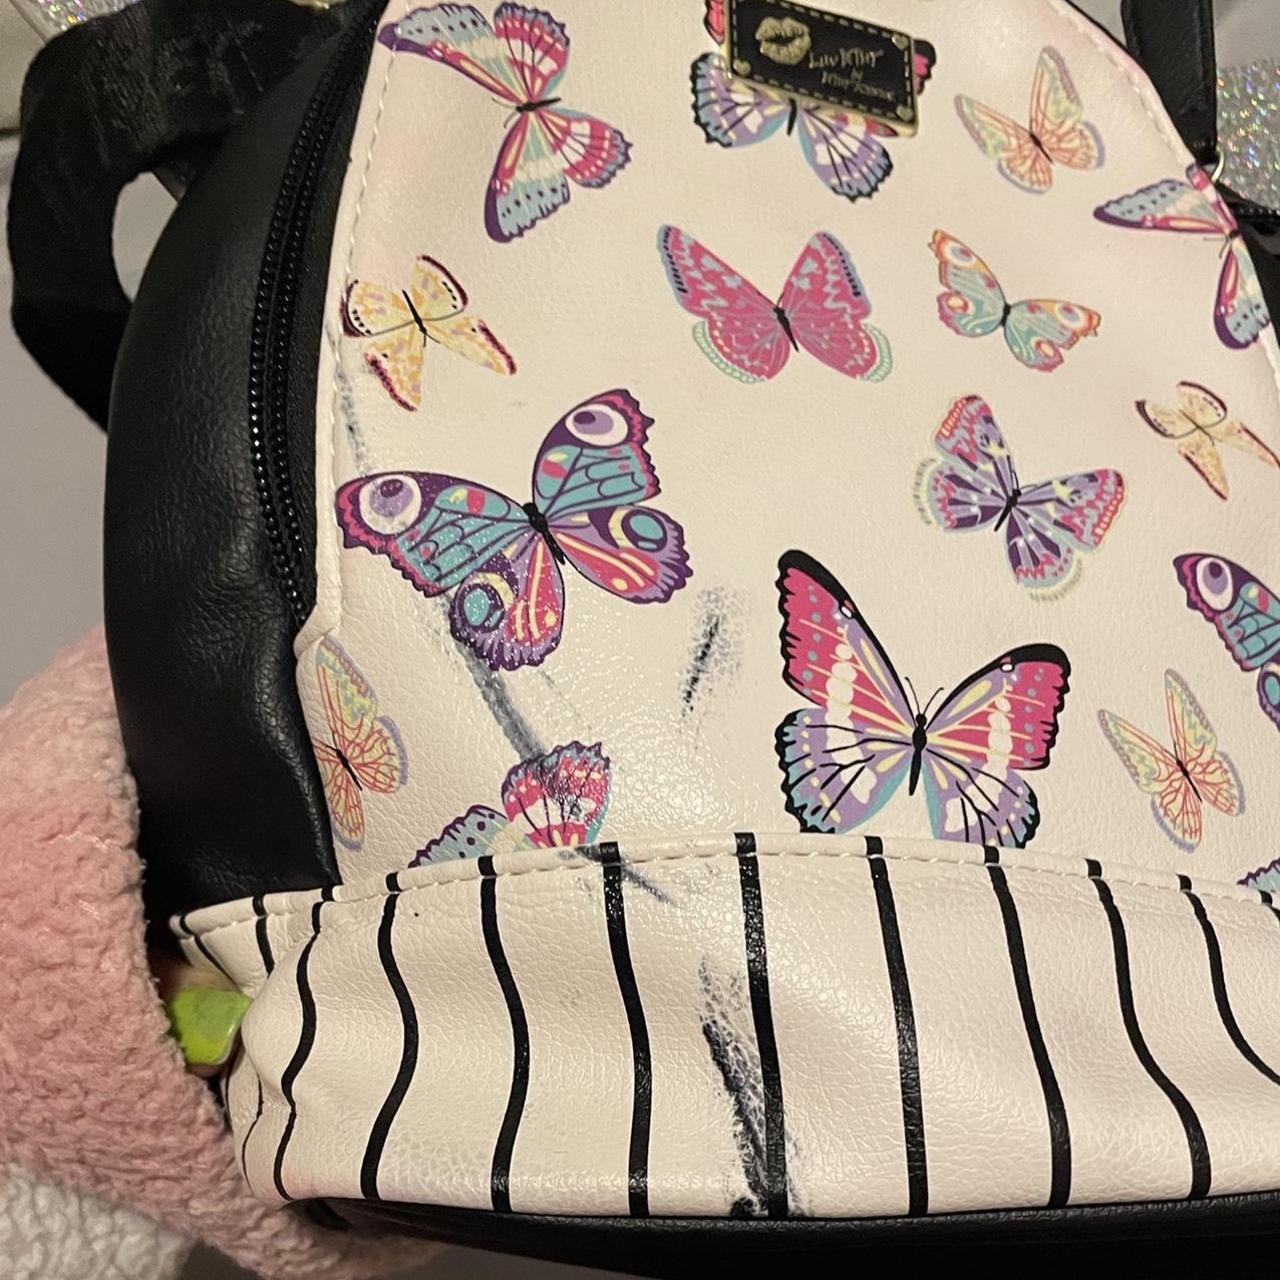 Betsey Johnson Butterflies Backpacks